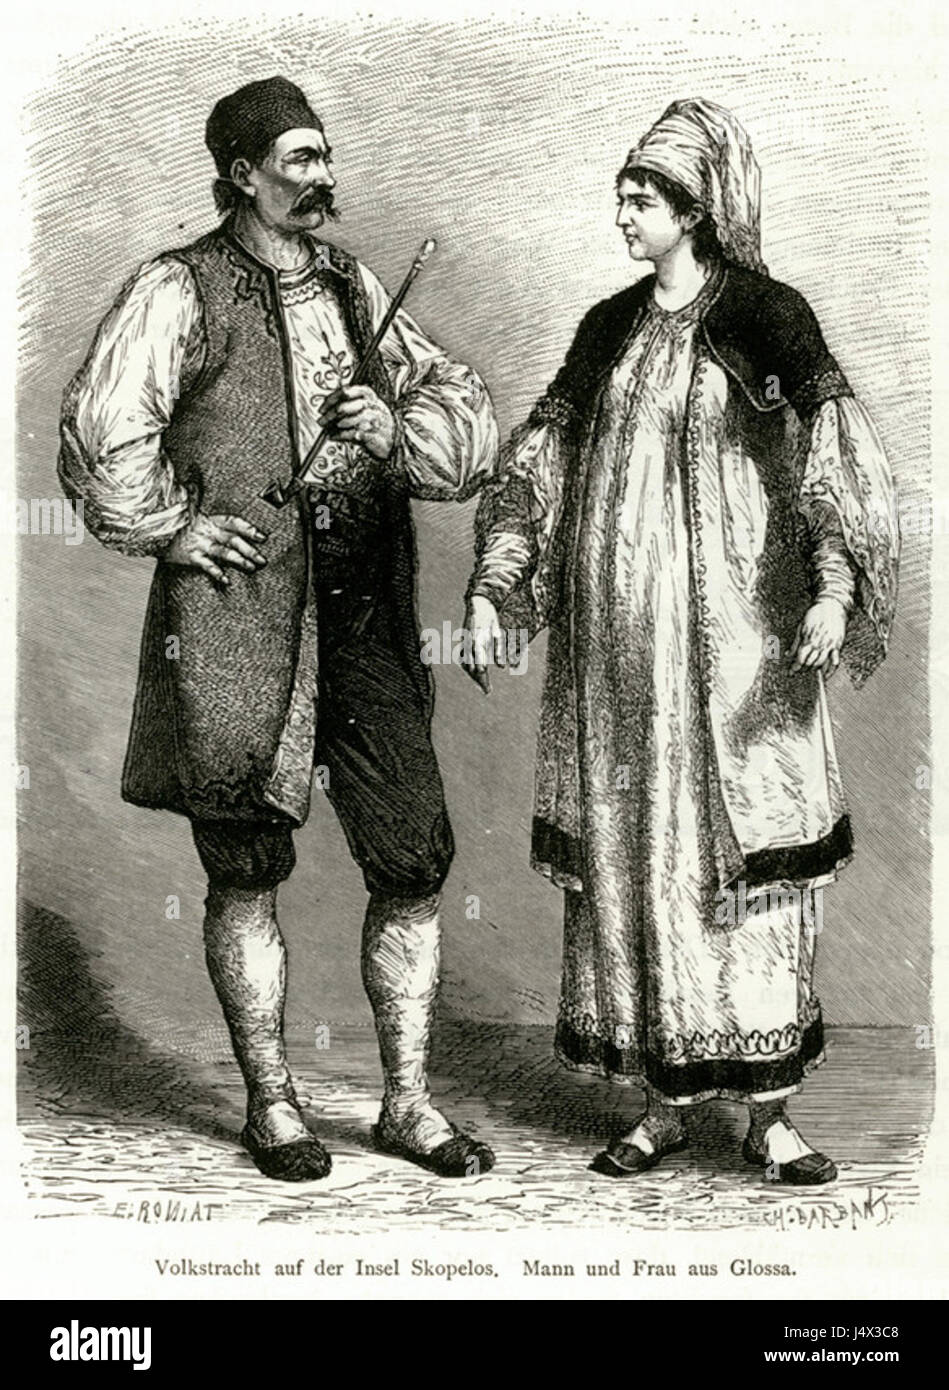 Volkstracht auf der Insel Skopelos Mann und Frau aus Glossa   Schweiger Lerchenfeld Amand (freiherr Von)   1887 Stock Photo